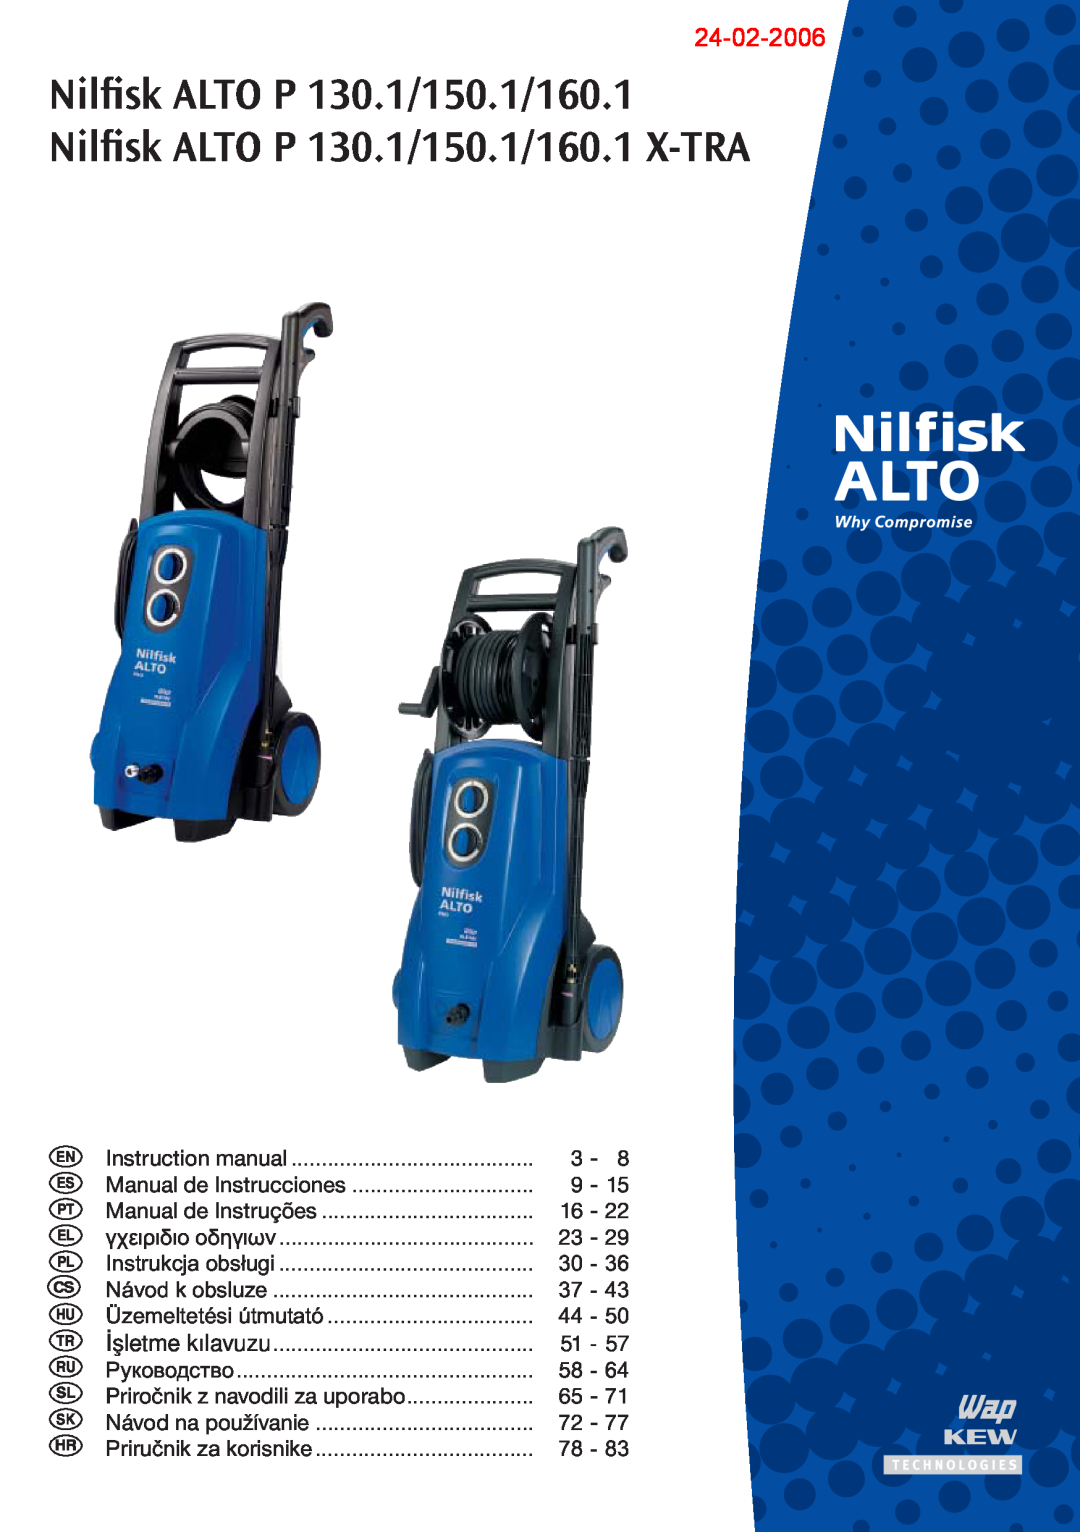 Nilfisk-ALTO P 130.1, P 150.1, P 160.1, P 130.1, P 150.1, P160.1 X-TRA instruction manual Nilﬁsk ALTO P 130.1/150.1/160.1 